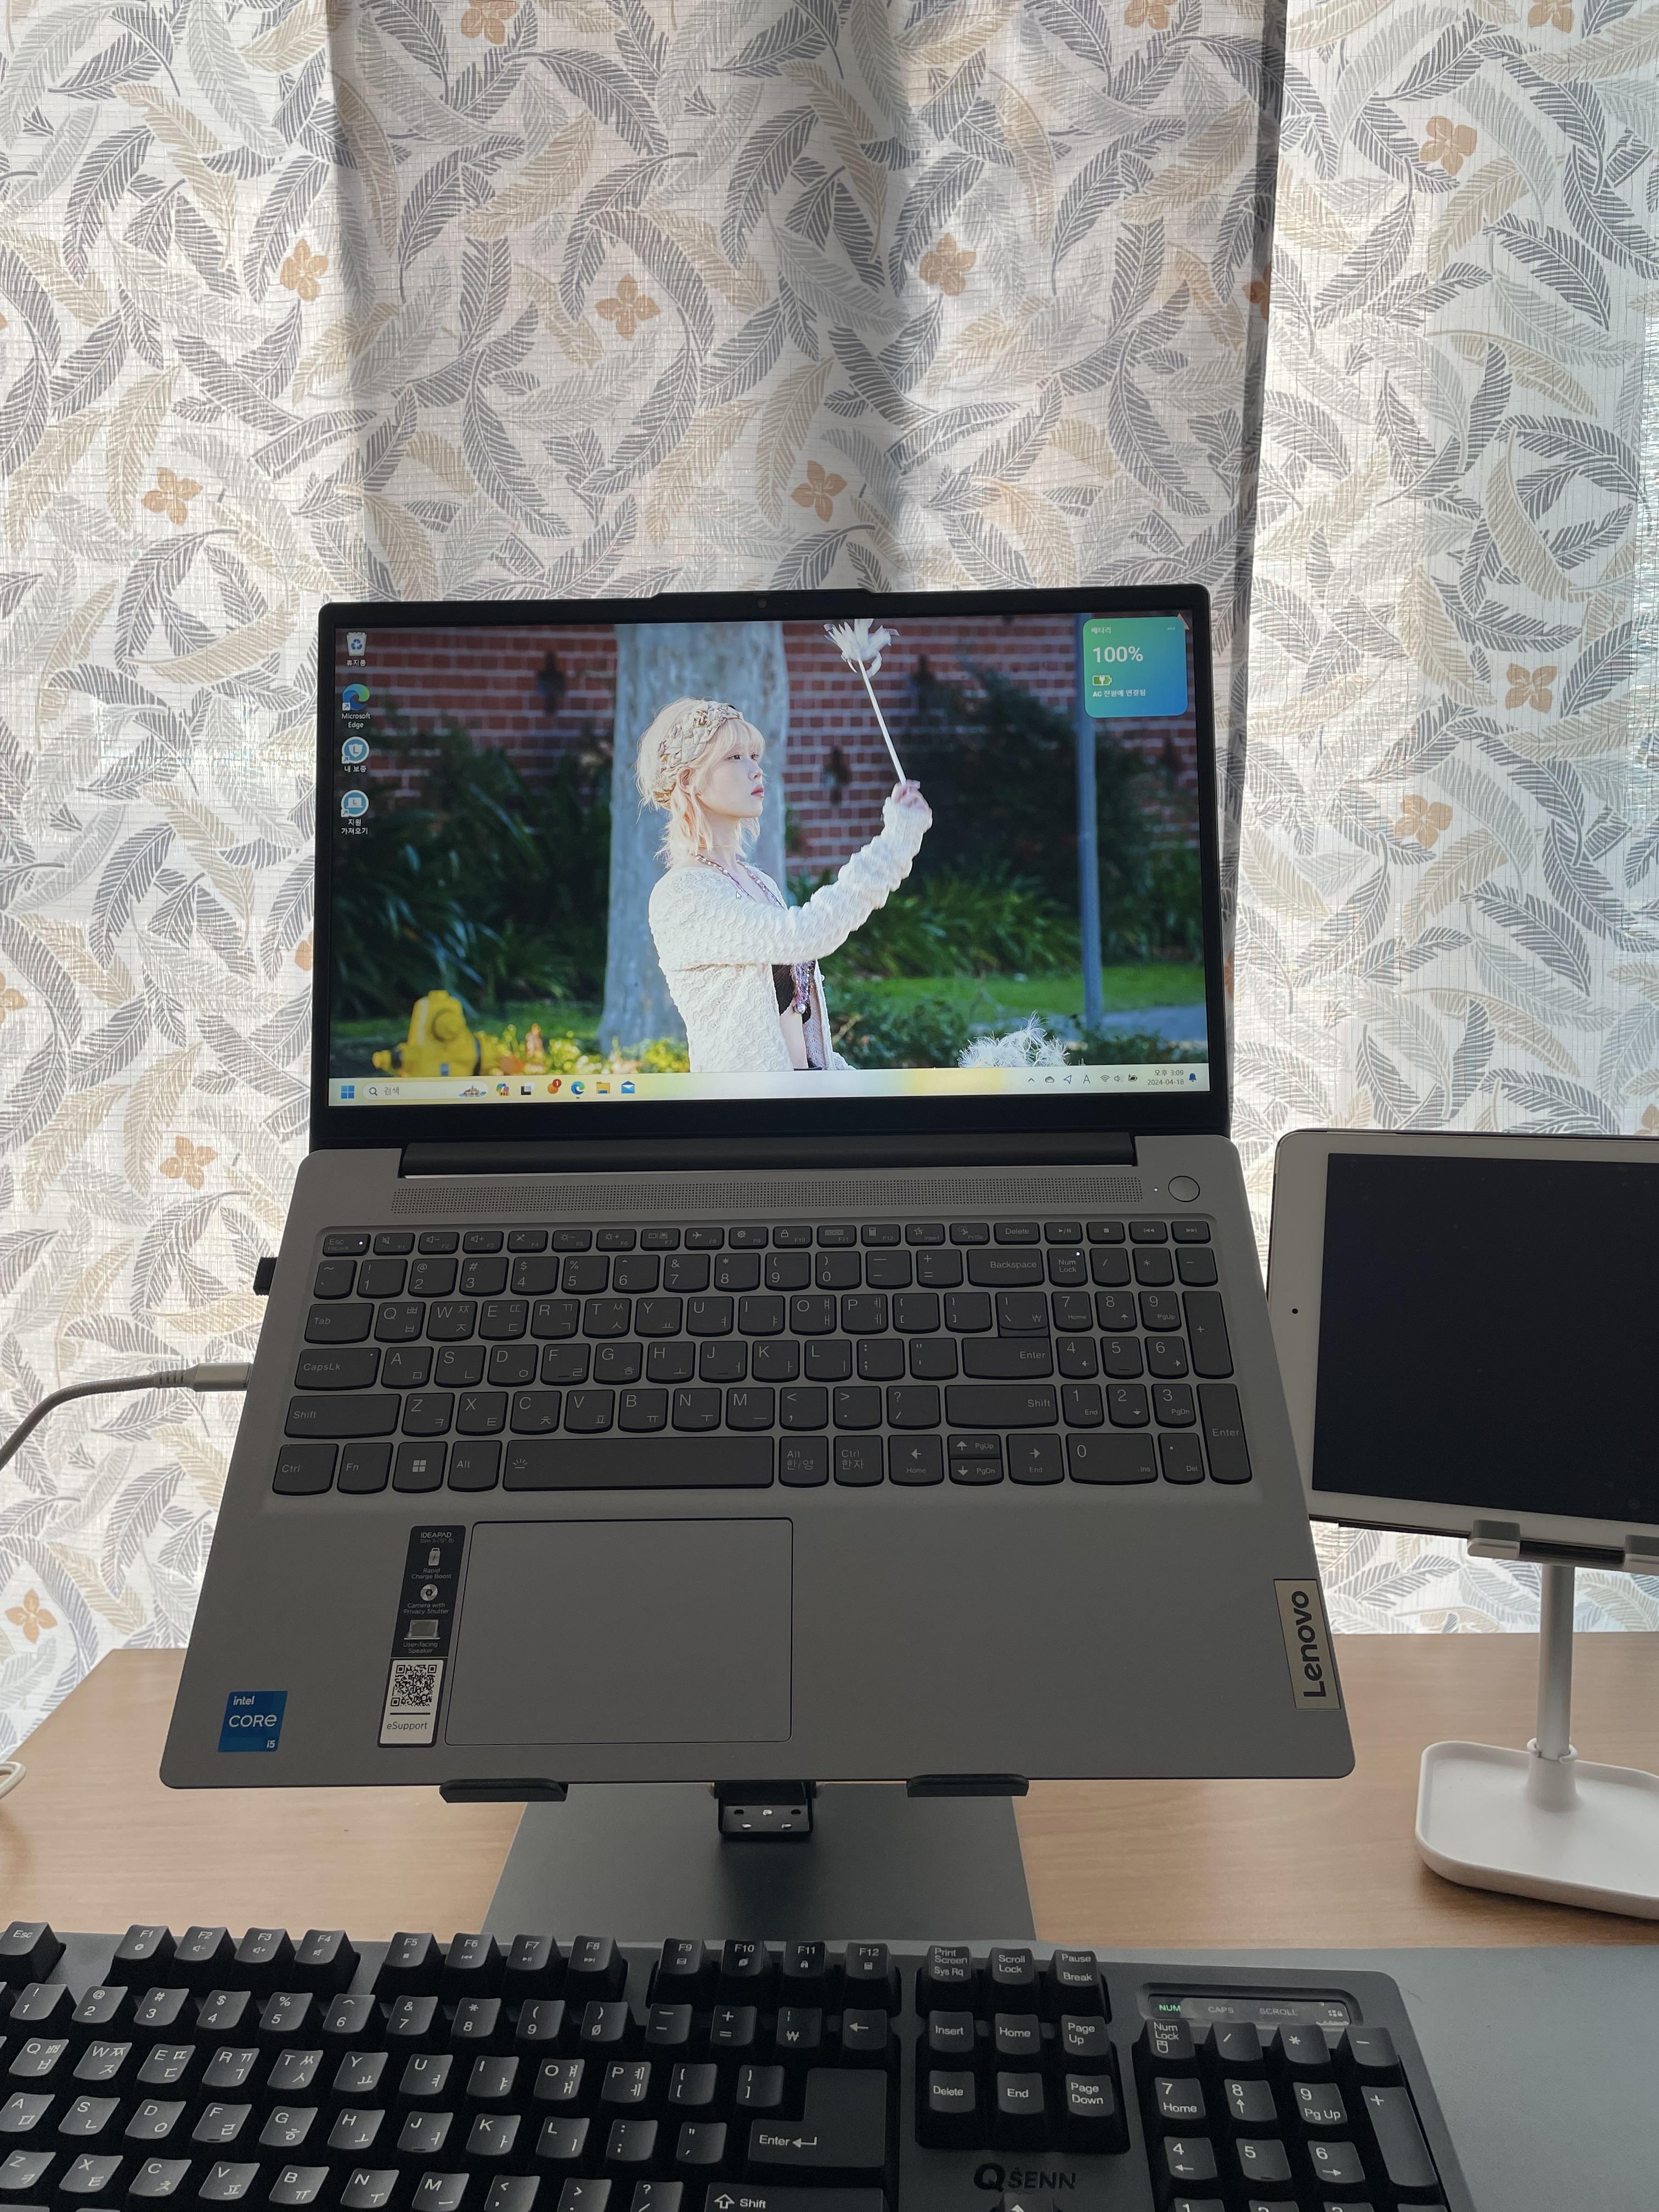 레노버 아이디어패드 슬림3 노트북 구매 후기 15irh8 인텔 i5 가성비 노트북